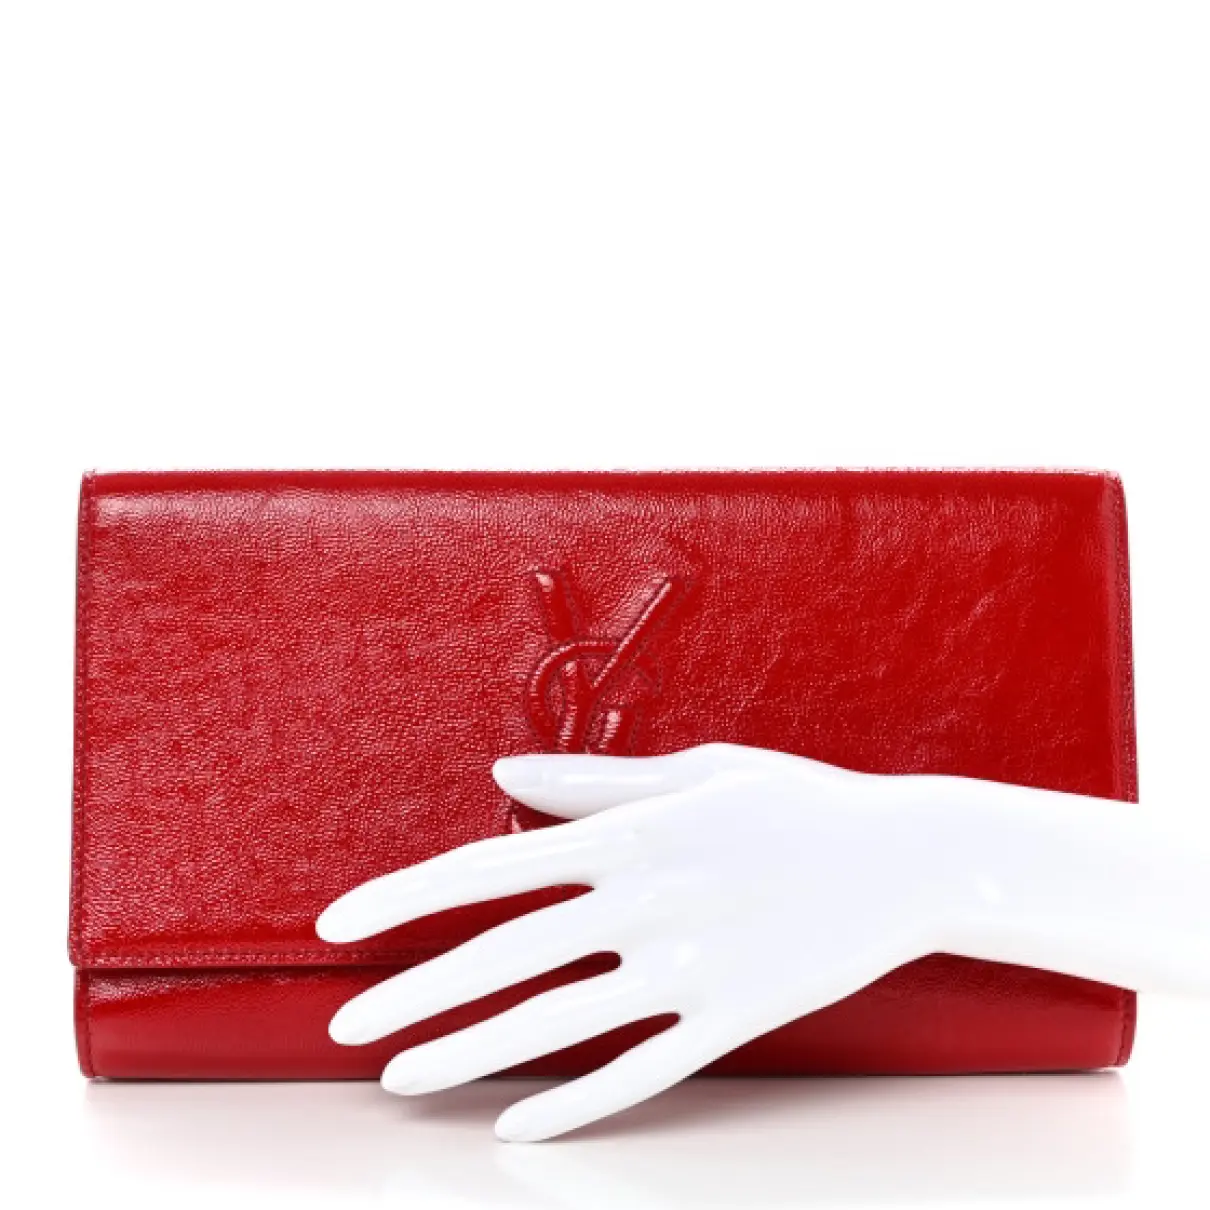 Buy Saint Laurent Patent leather clutch bag online